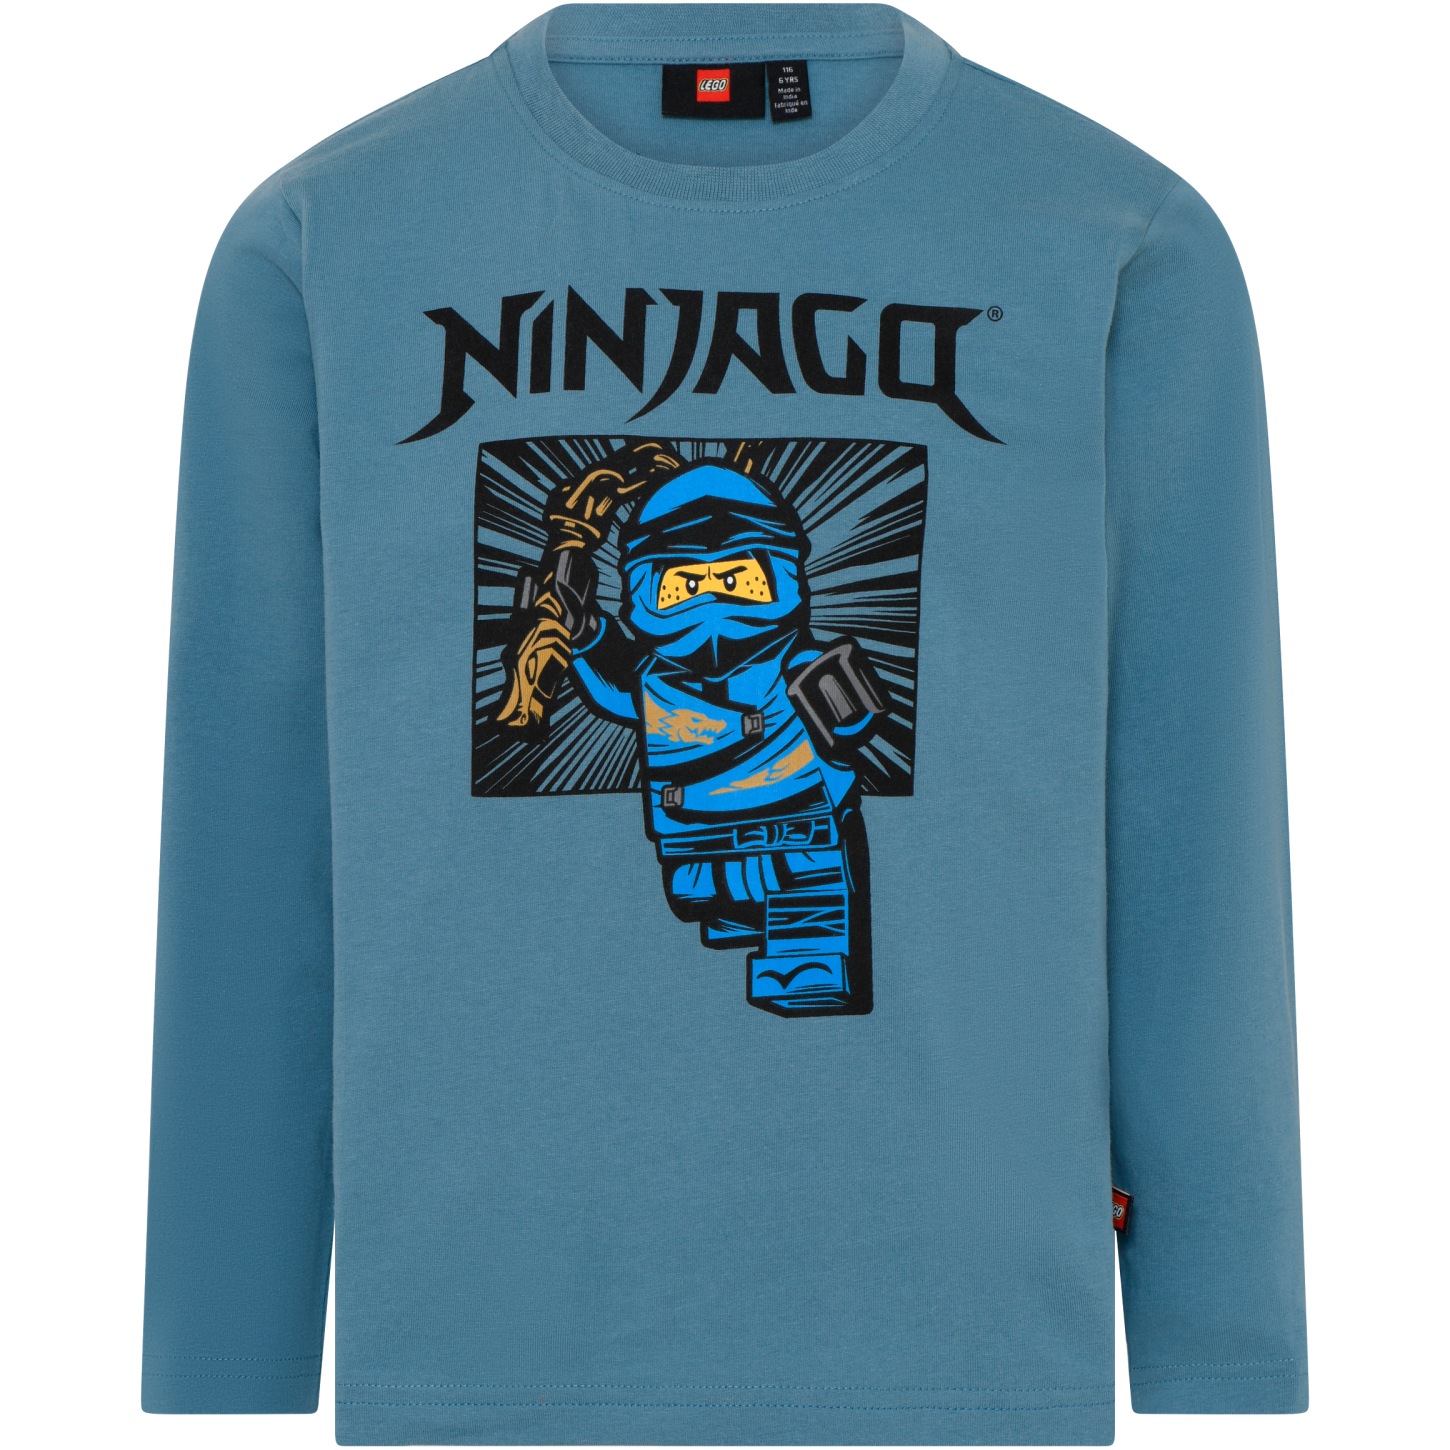 Productfoto van LEGO® Taylor 613 - NINJAGO Jongens Shirt met Lange Mouwen - Dusty Blue